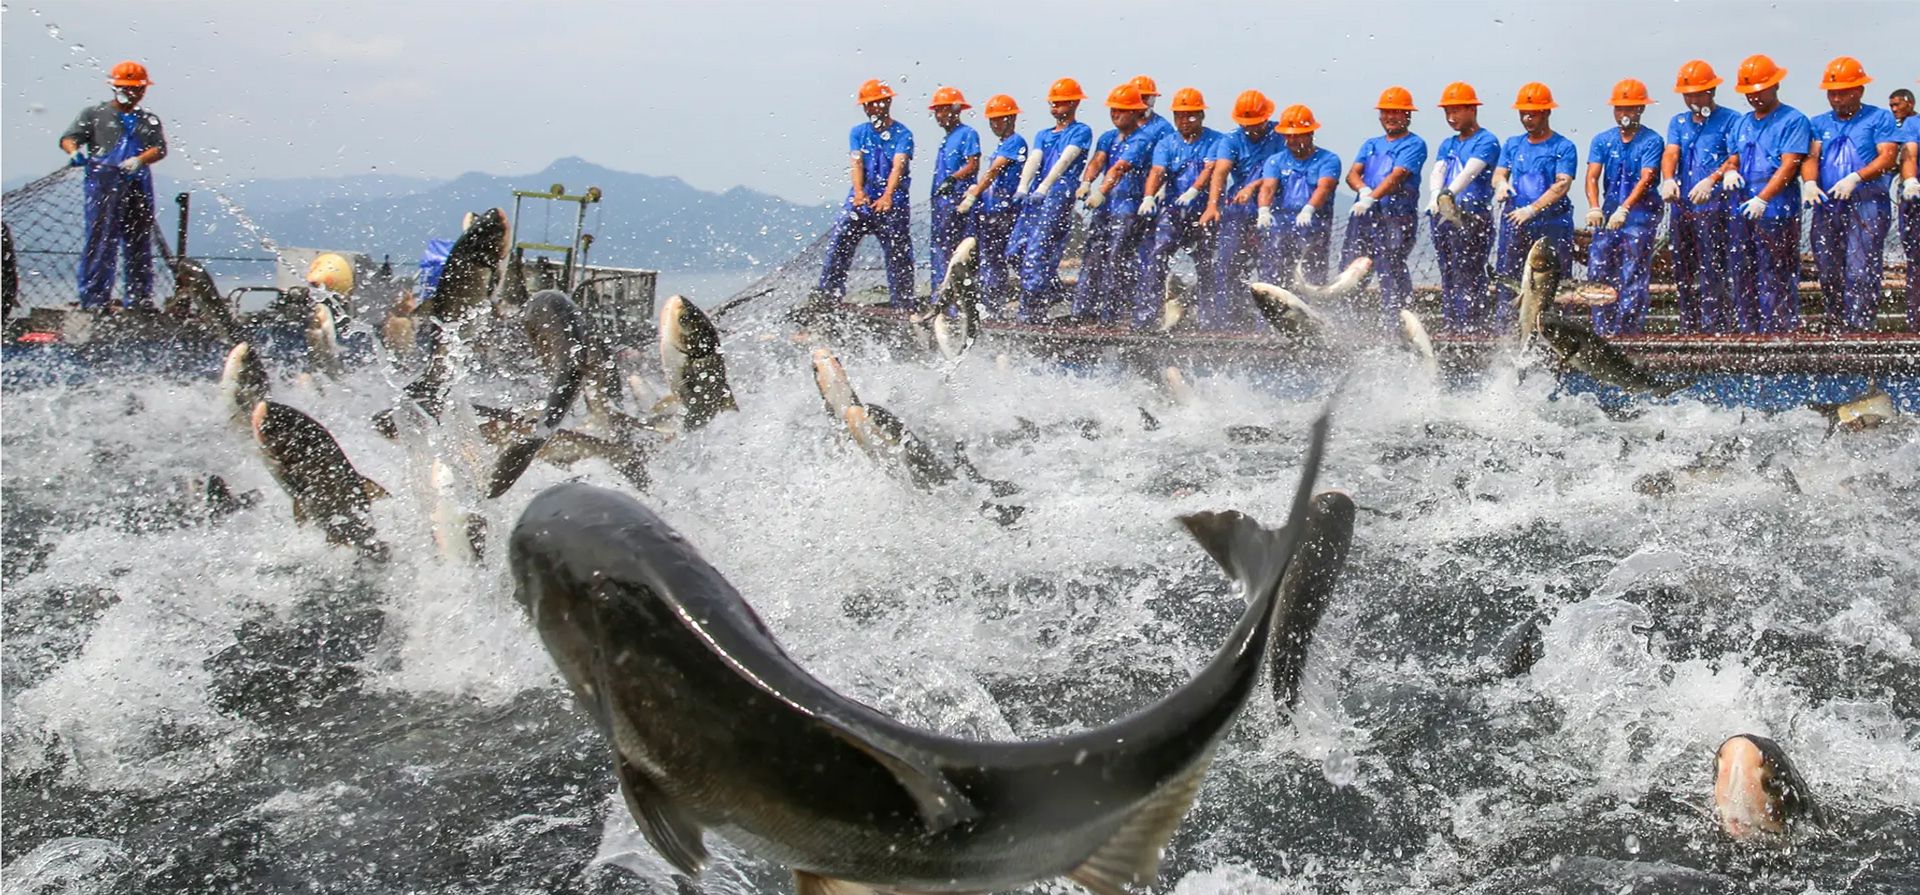 Pescadores tiran de una enorme red en el lago Qiandao para dar la bienvenida al quinto festival de la cosecha de los agricultores chinos en Zhejiang, China. Fotografía: VCG/Getty Images